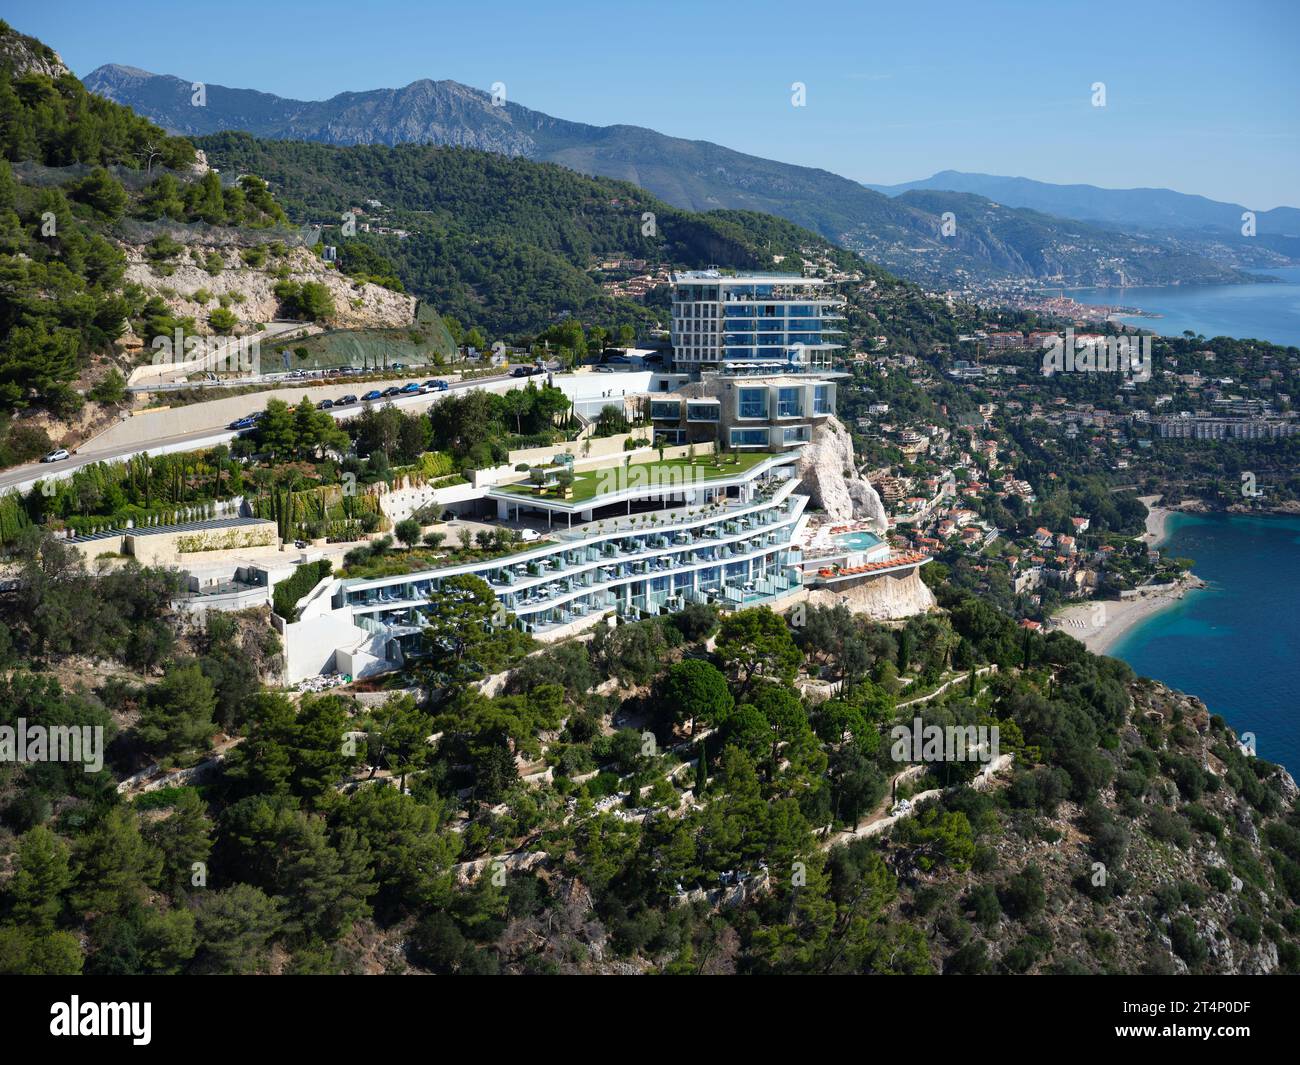 LUFTAUFNAHME. Maybourne Riviera Hotel mit atemberaubendem Blick auf das Mittelmeer. Roquebrune-Cap-Martin, Französische Riviera, Frankreich. Stockfoto